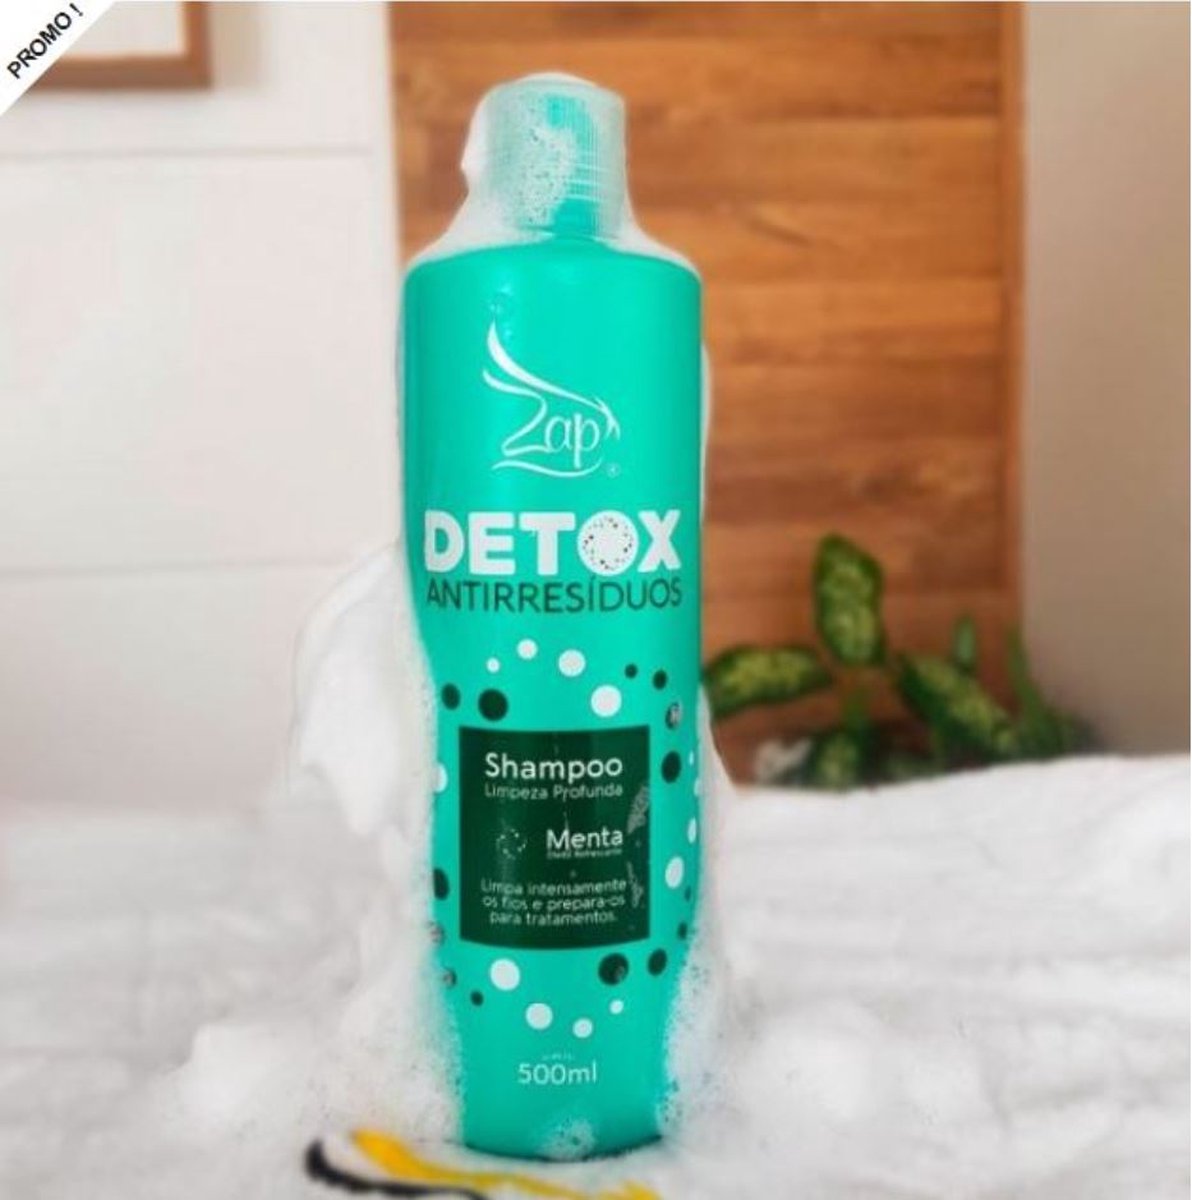 ZAP Shampoo MENTE DETOX Anti Residuos & Mask SOS onder douche douche (Home care)